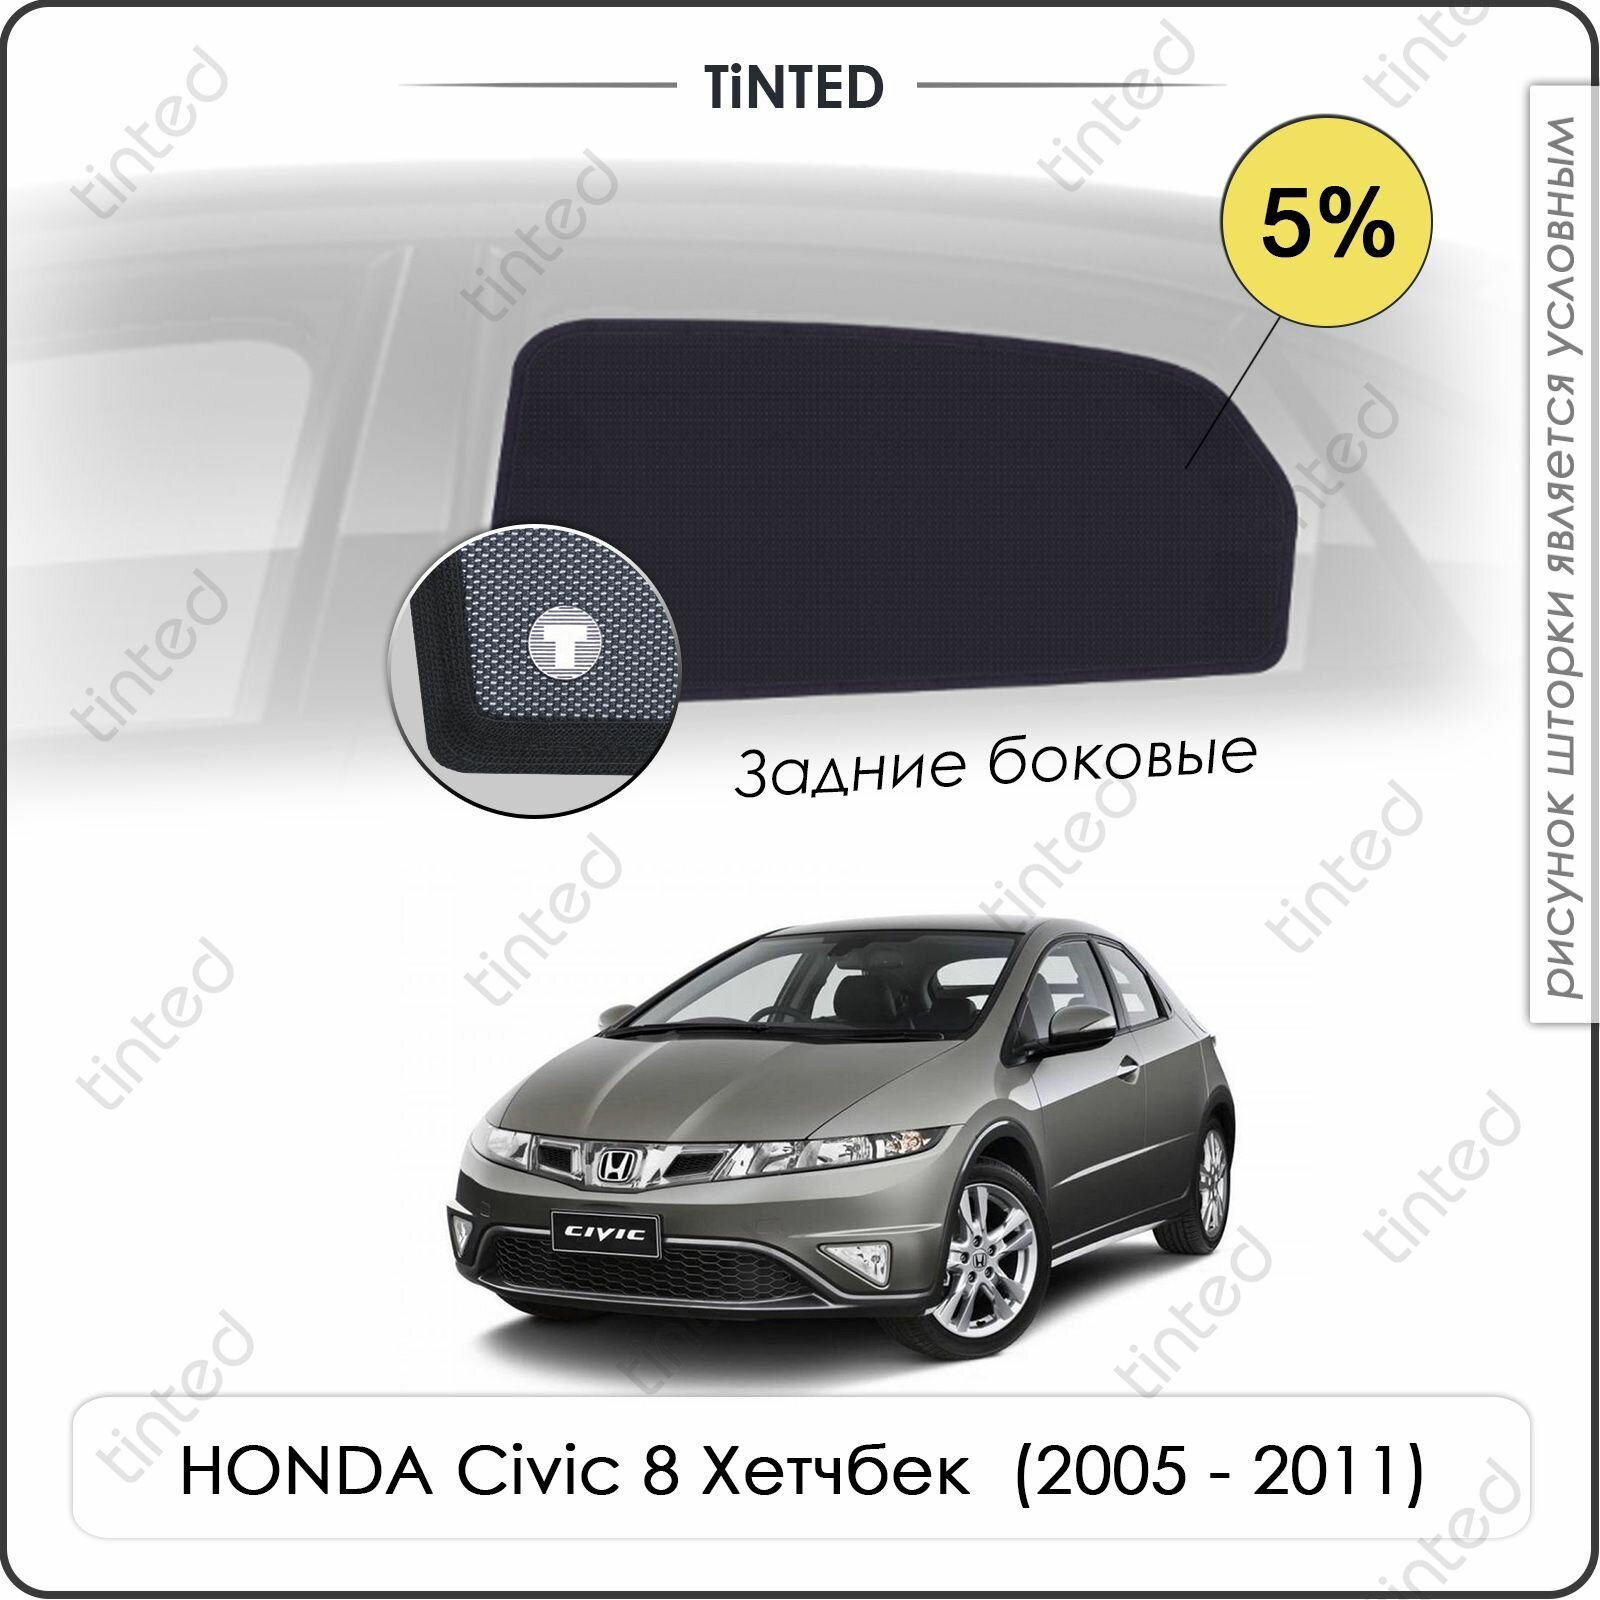 Шторки на автомобиль солнцезащитные HONDA Civic 8 Хетчбек 5дв. (2005 - 2011) на задние двери 5%, сетки от солнца в машину хонда цивик, Каркасные автошторки Premium